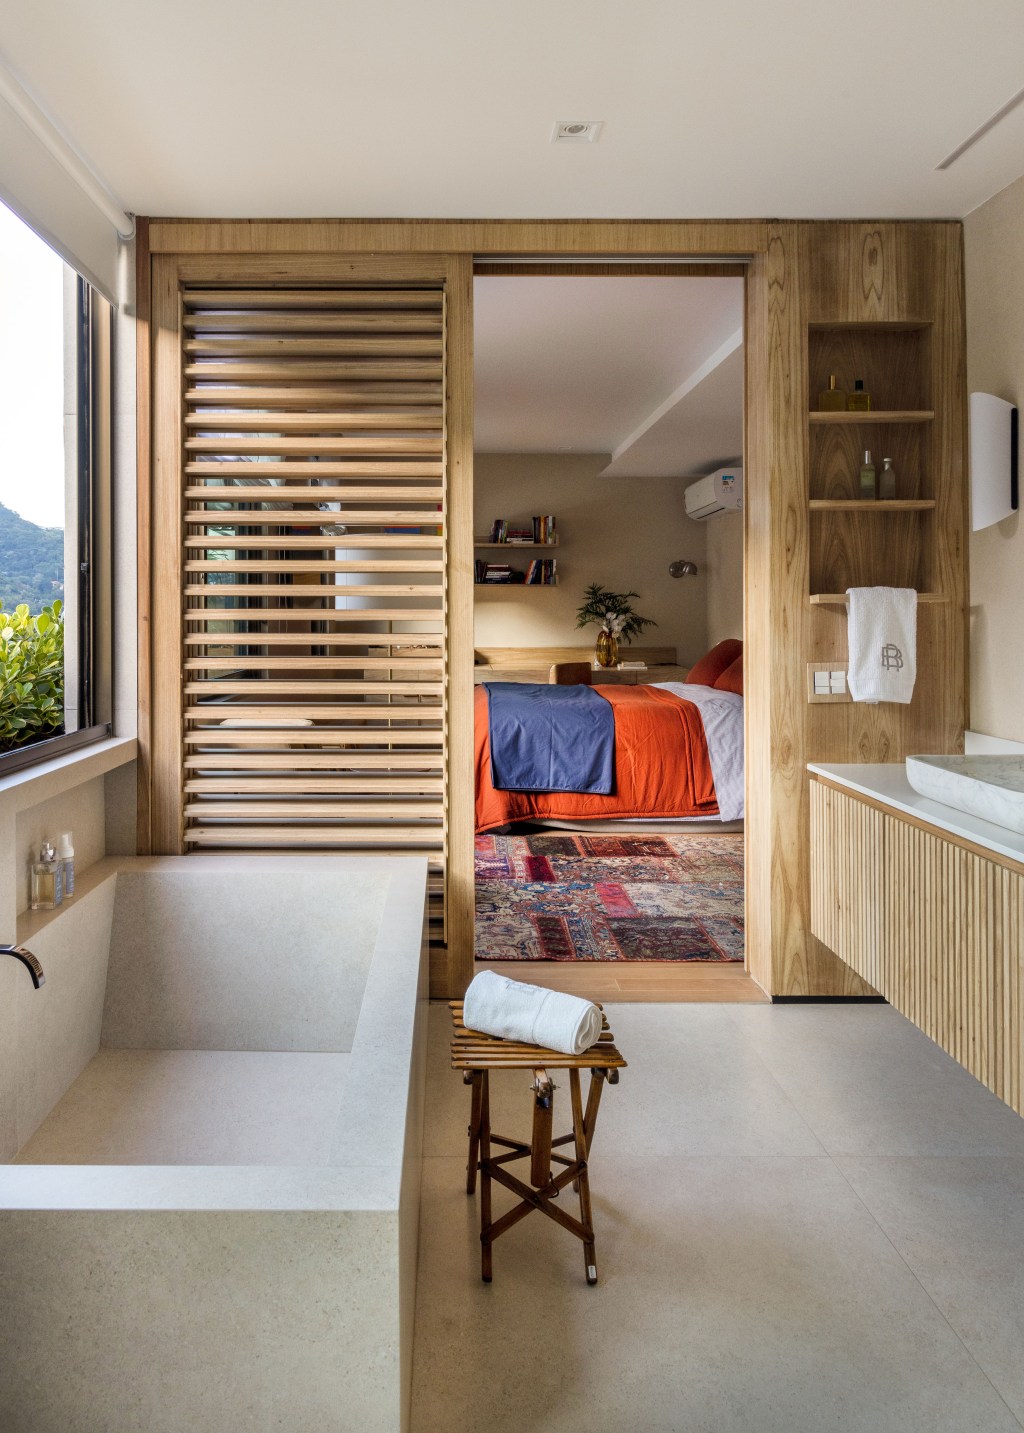 Apê 400 m² cara de casa design brasileiro arte Escala Arquitetura Rio de Janeiro decoracao banheiro banheira madeira suite